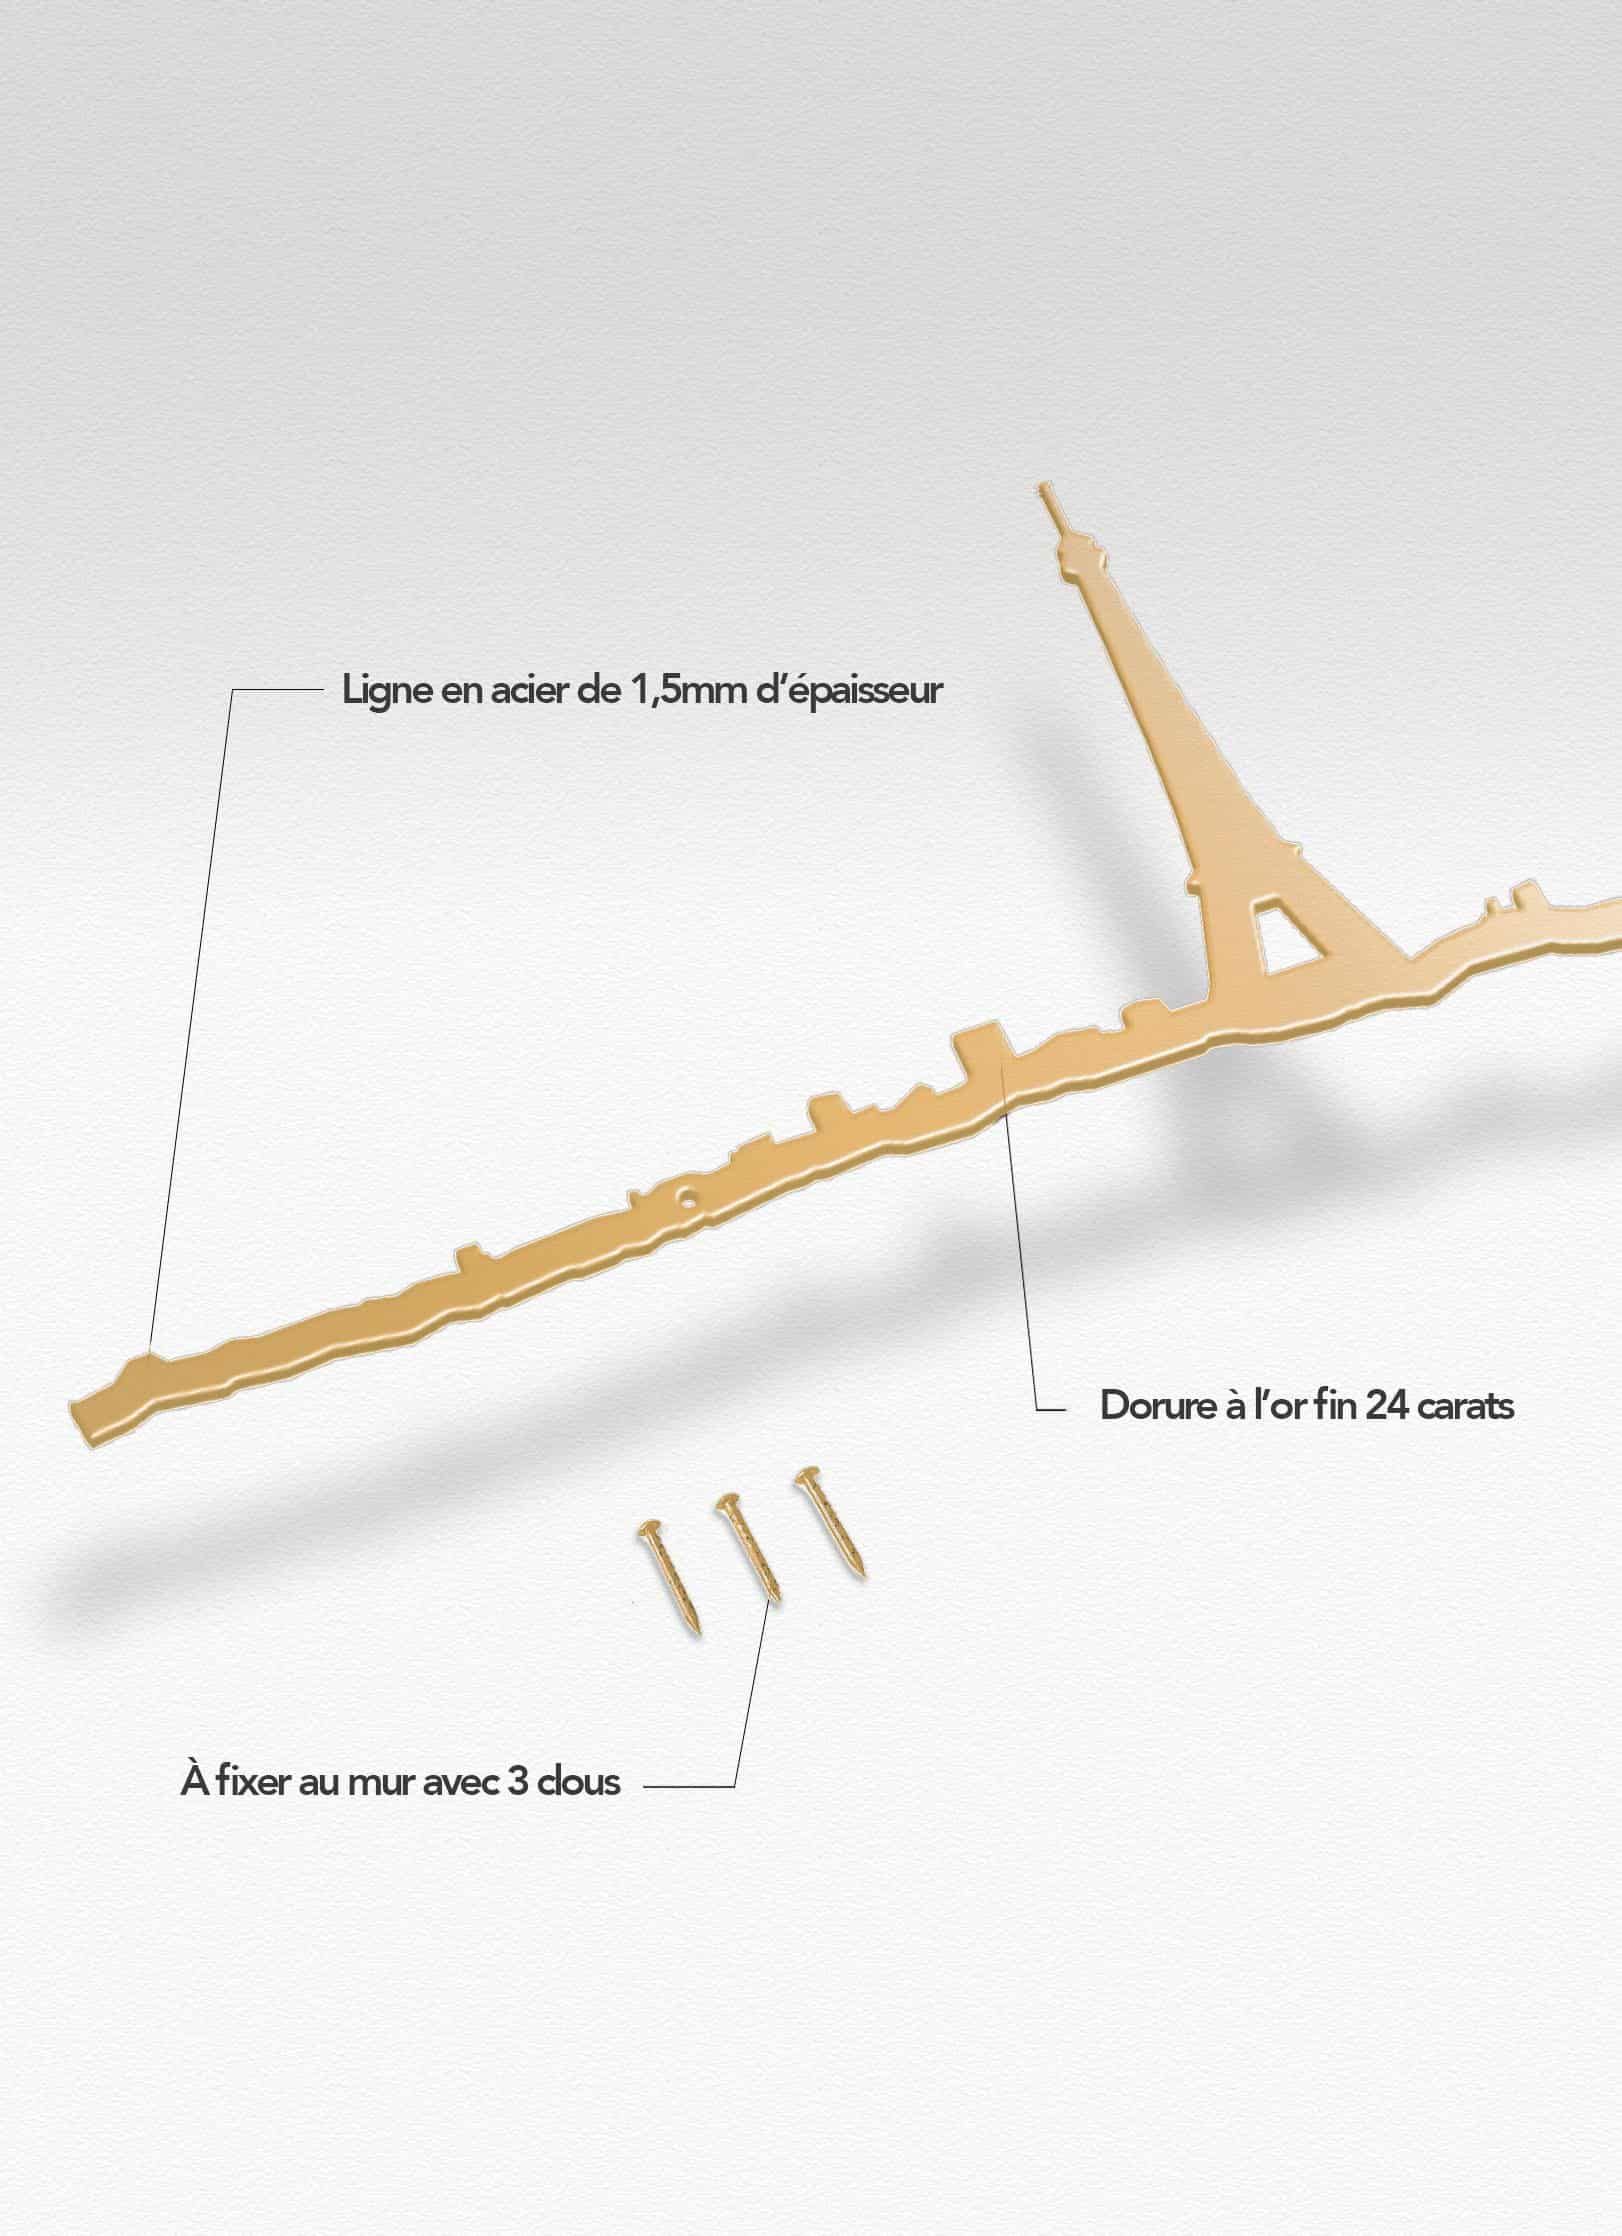 Presentation of the skyline of Paris doré